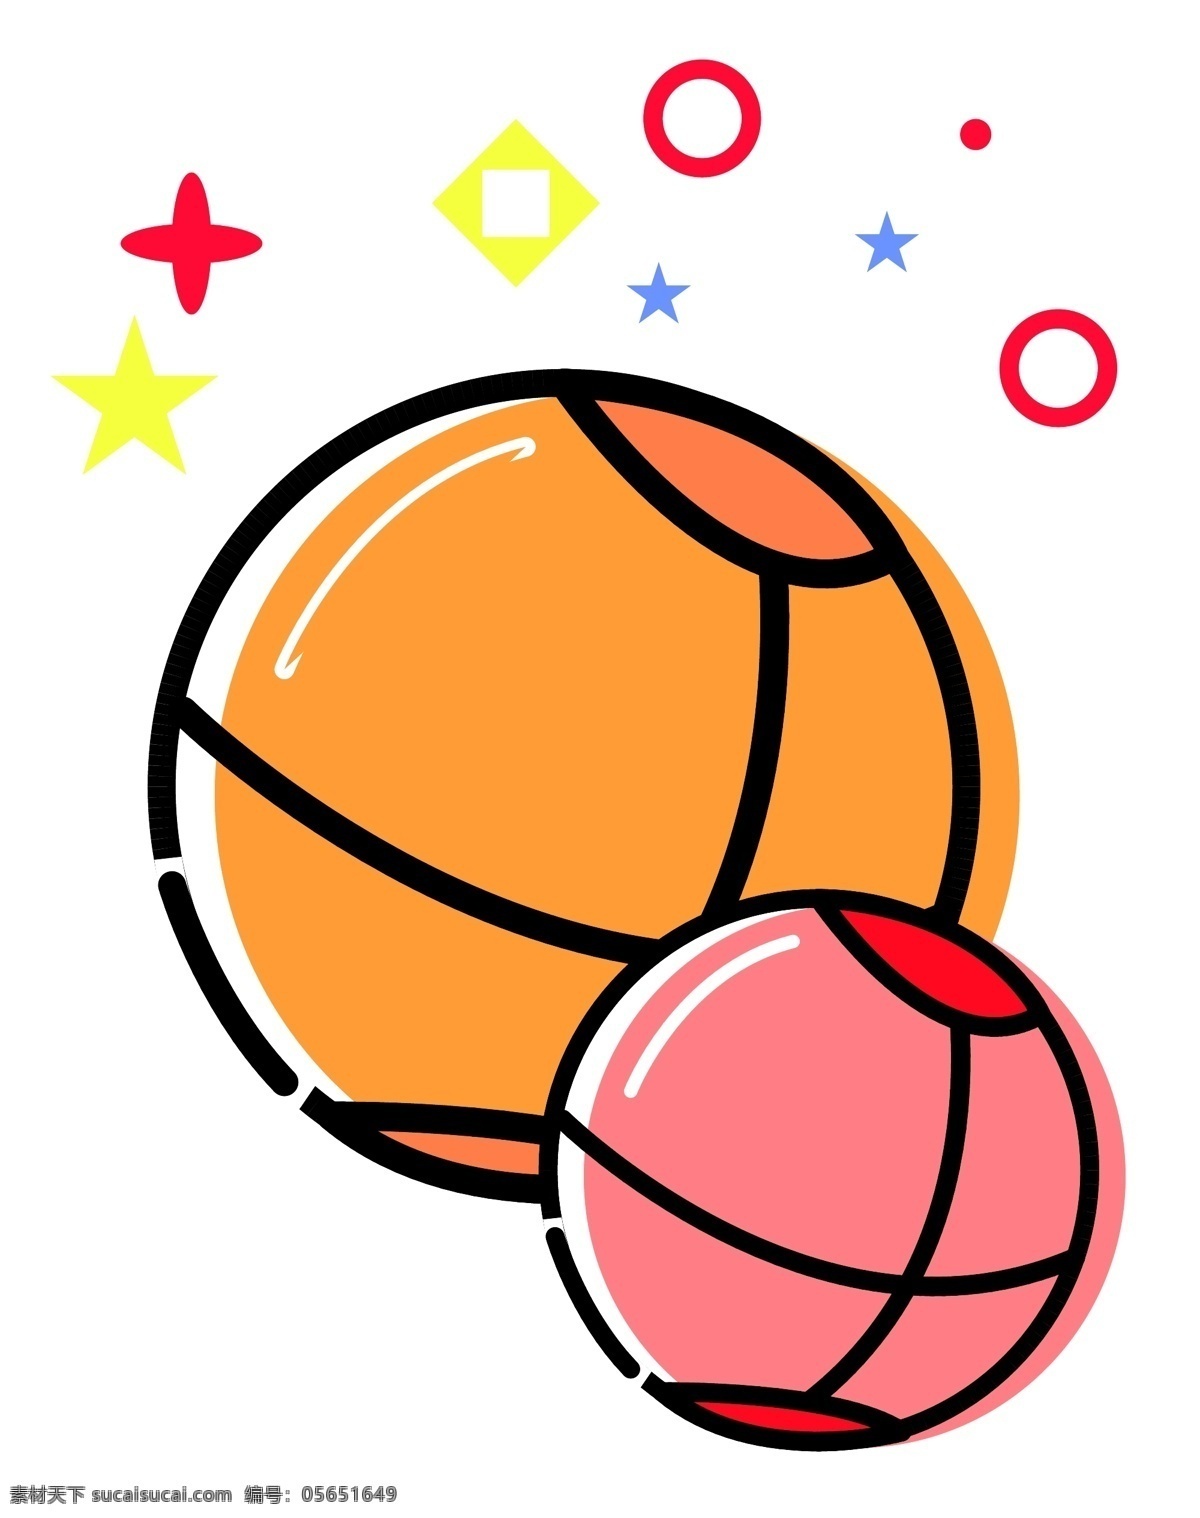 圆形篮球图案 玩具 篮球 比赛